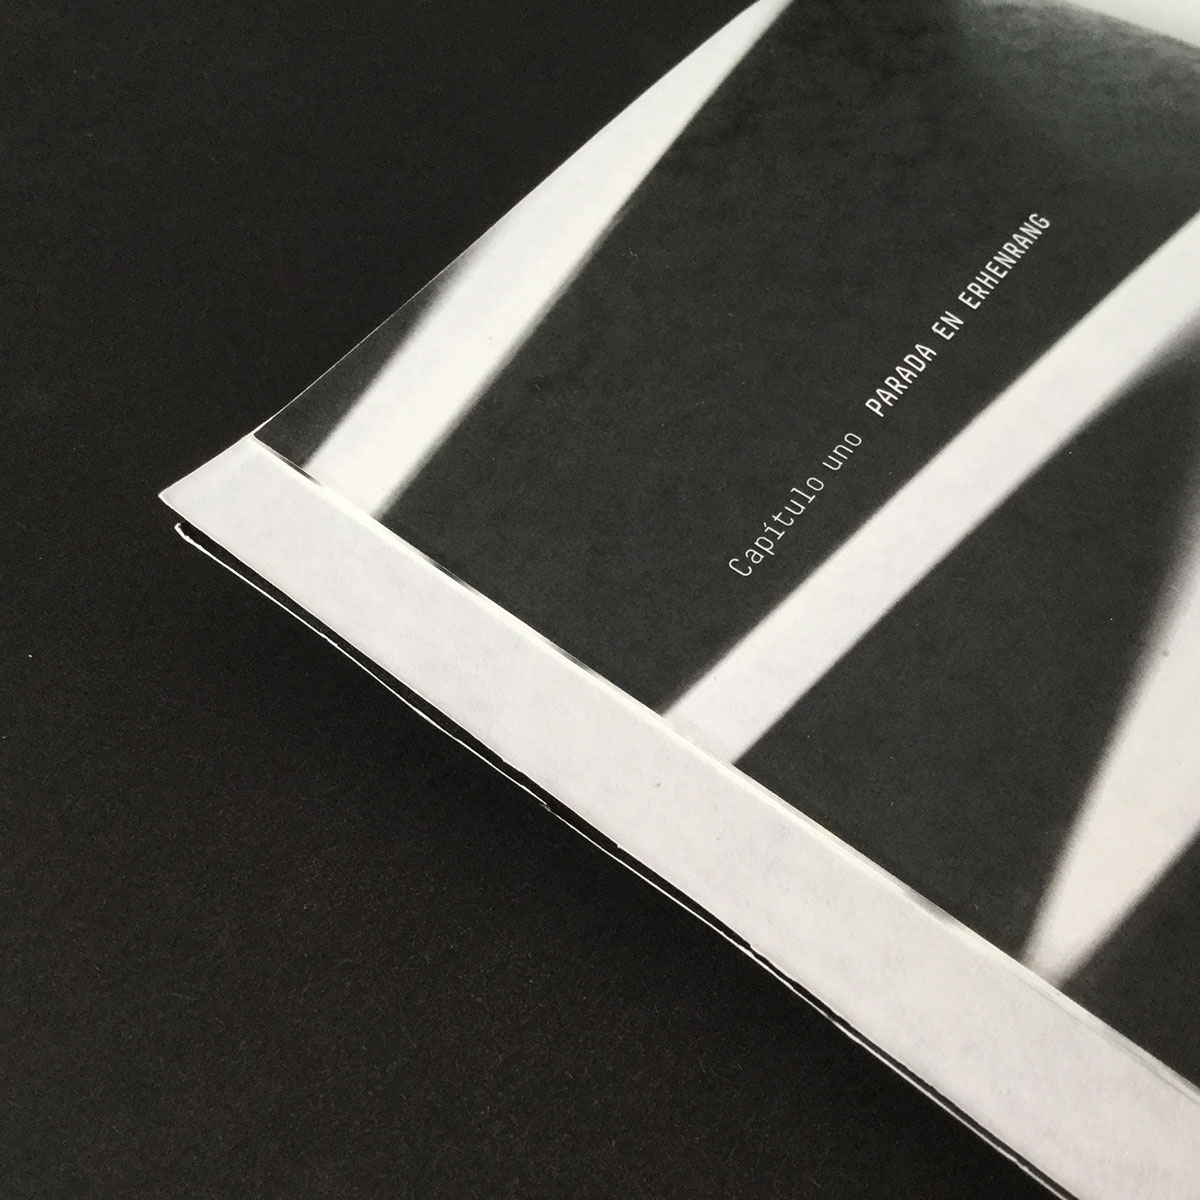 editorial colección books manela black and white ciencia fadu tipografia cover galaxy